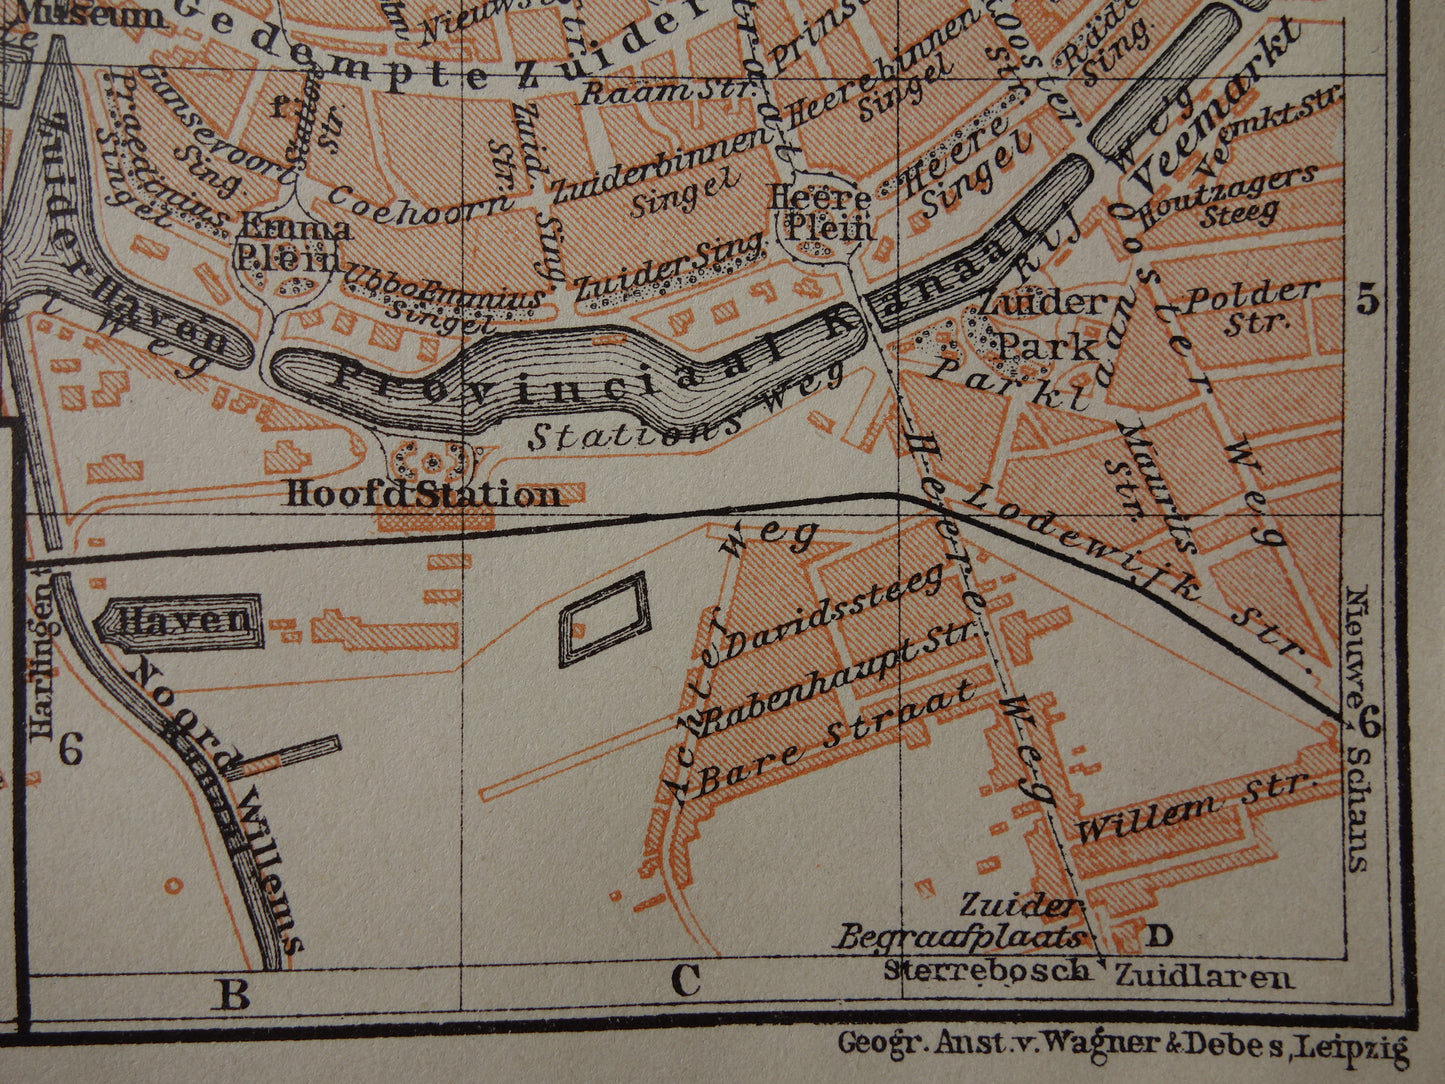 Groningen oude kaart van Groningen Stad uit 1910 kleine originele antieke plattegrond vintage print